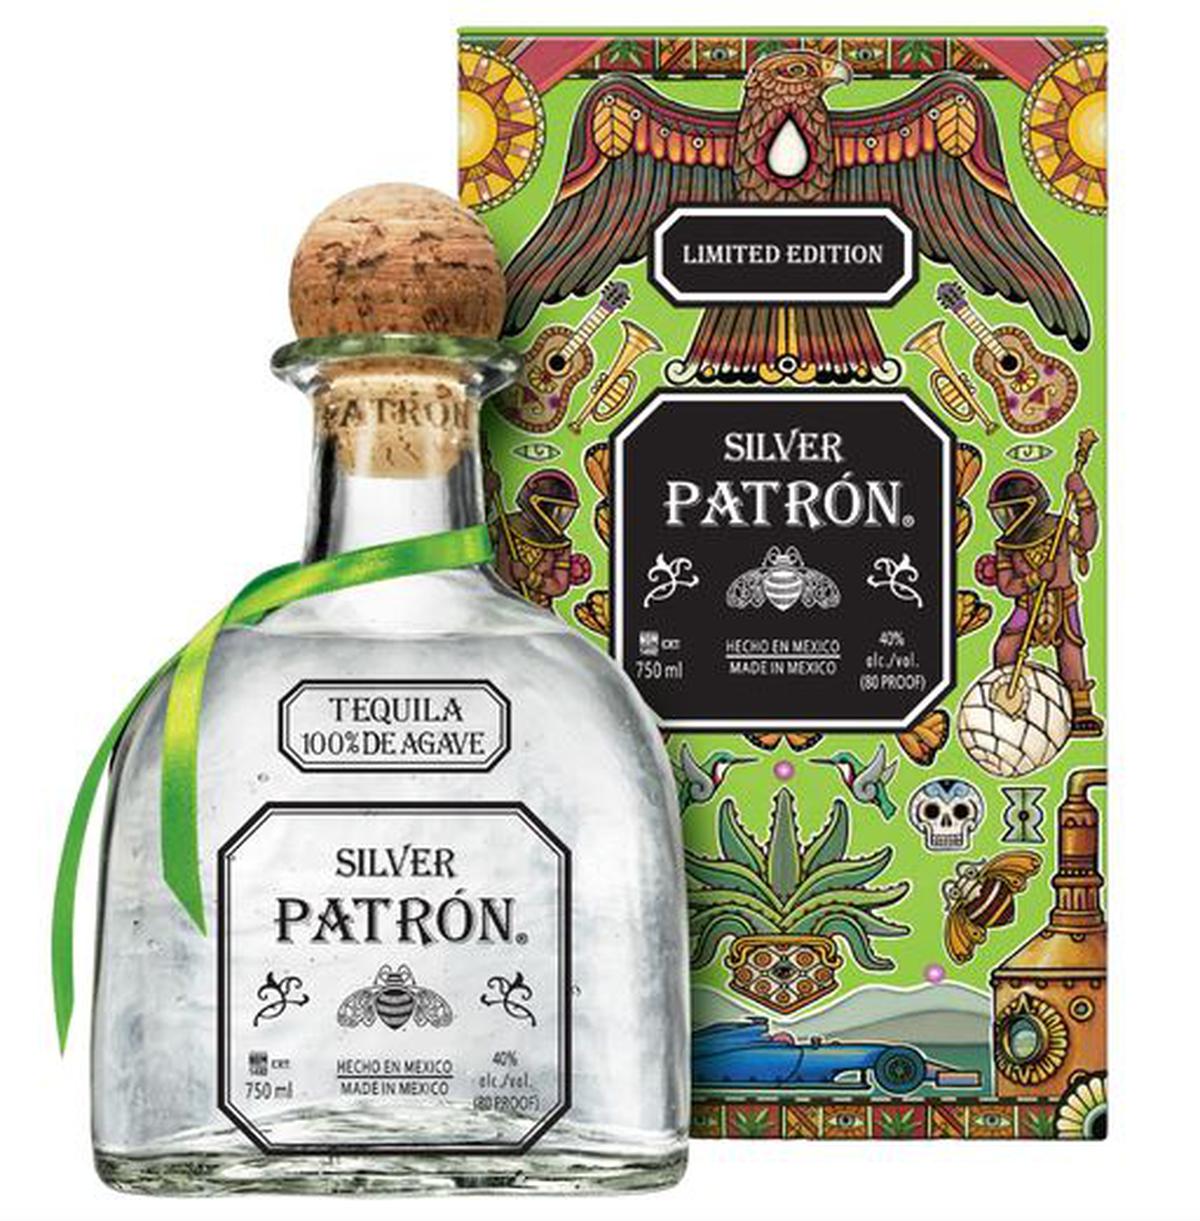 Checo diseñó esta botella de tequila Patrón | Especial